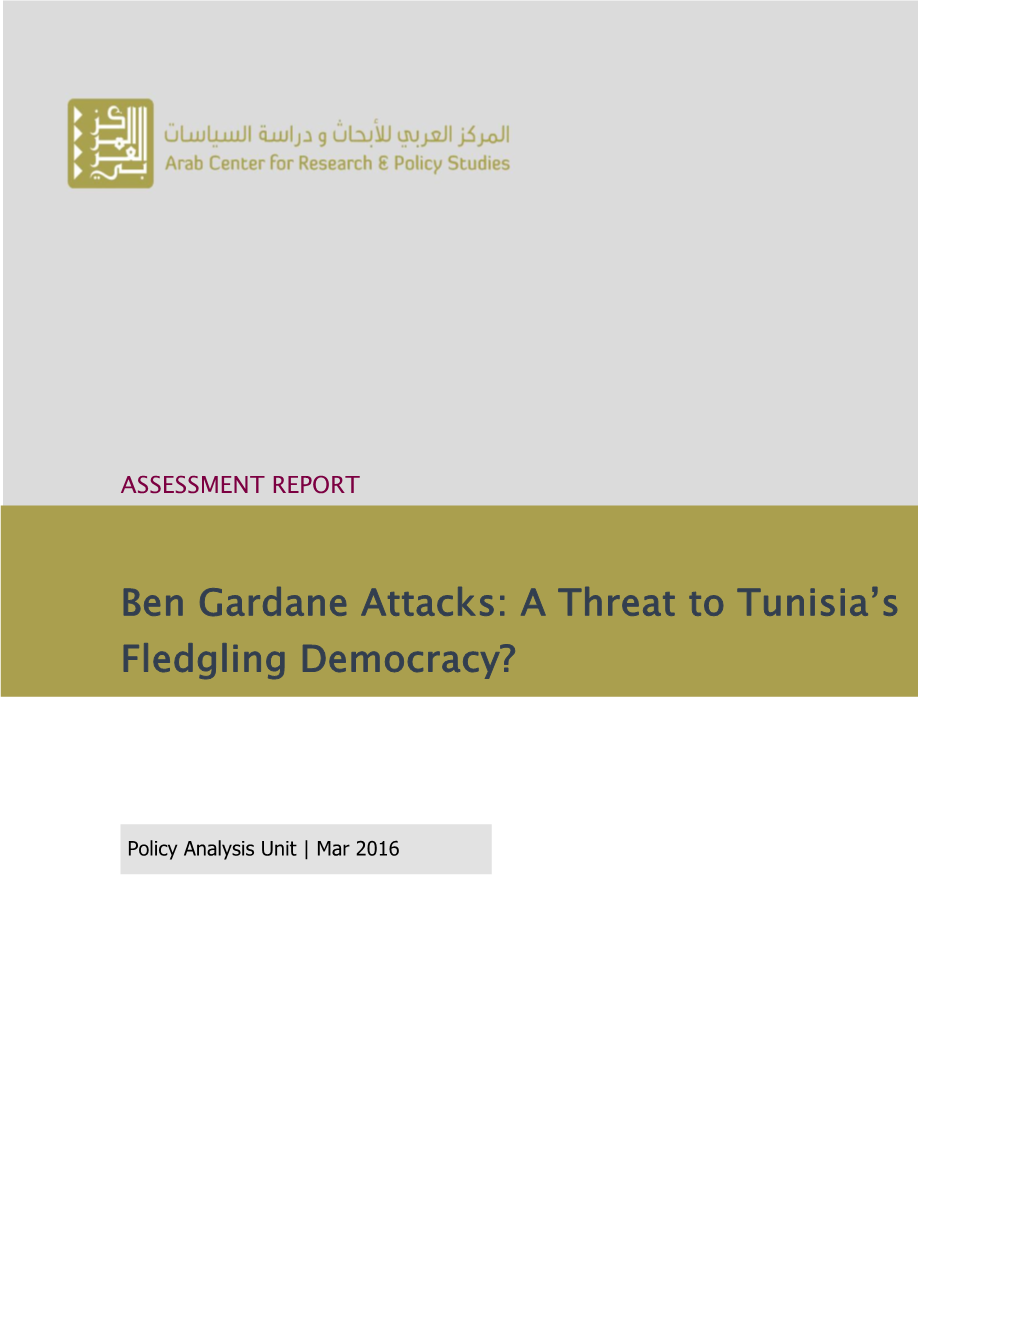 Ben Gardane Attacks: a Threat to Tunisia's Fledgling Democracy?